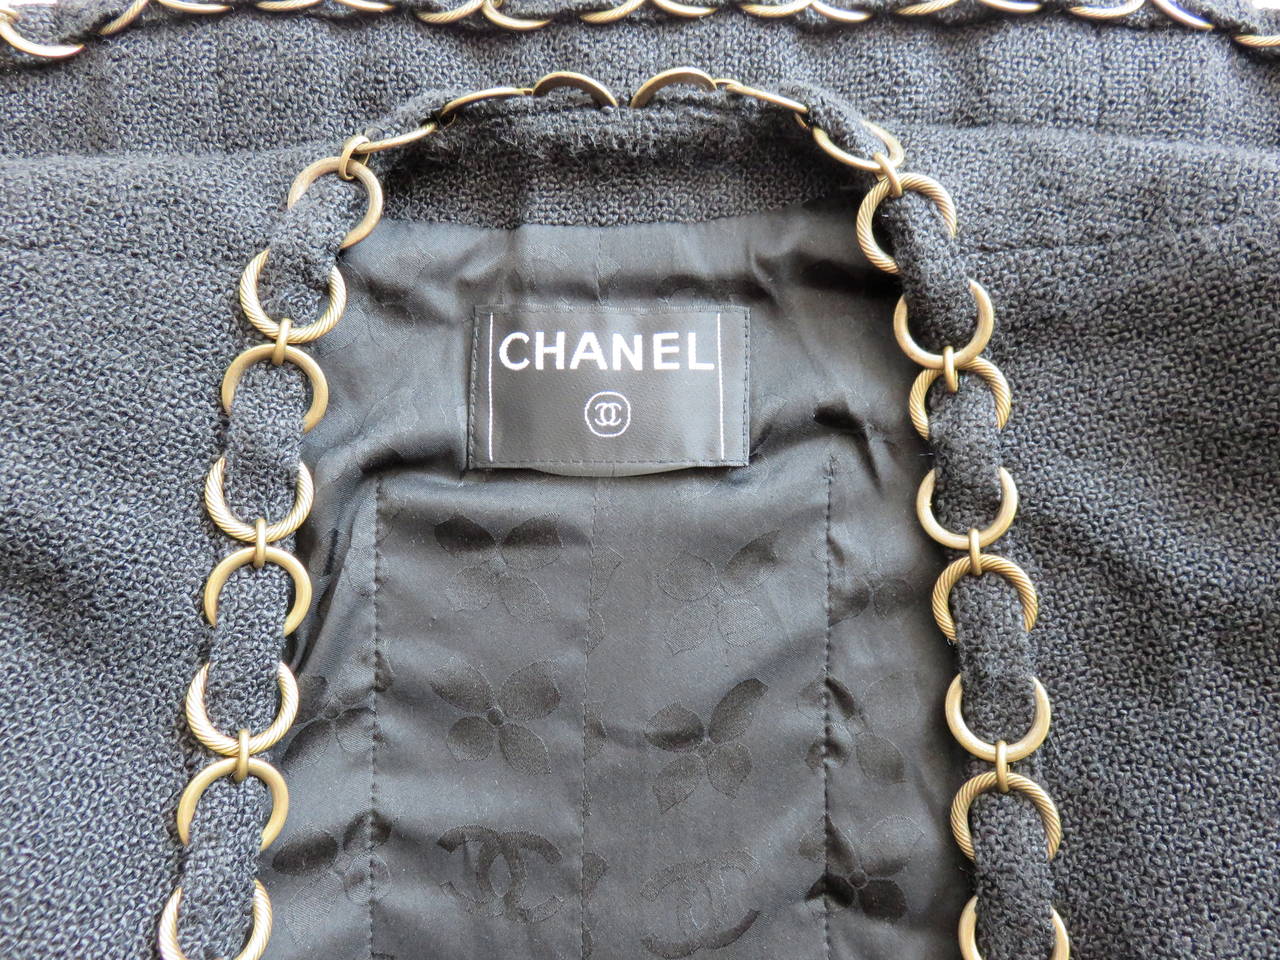 CHANEL PARIS Brass ring-chain trim pant suit For Sale 5